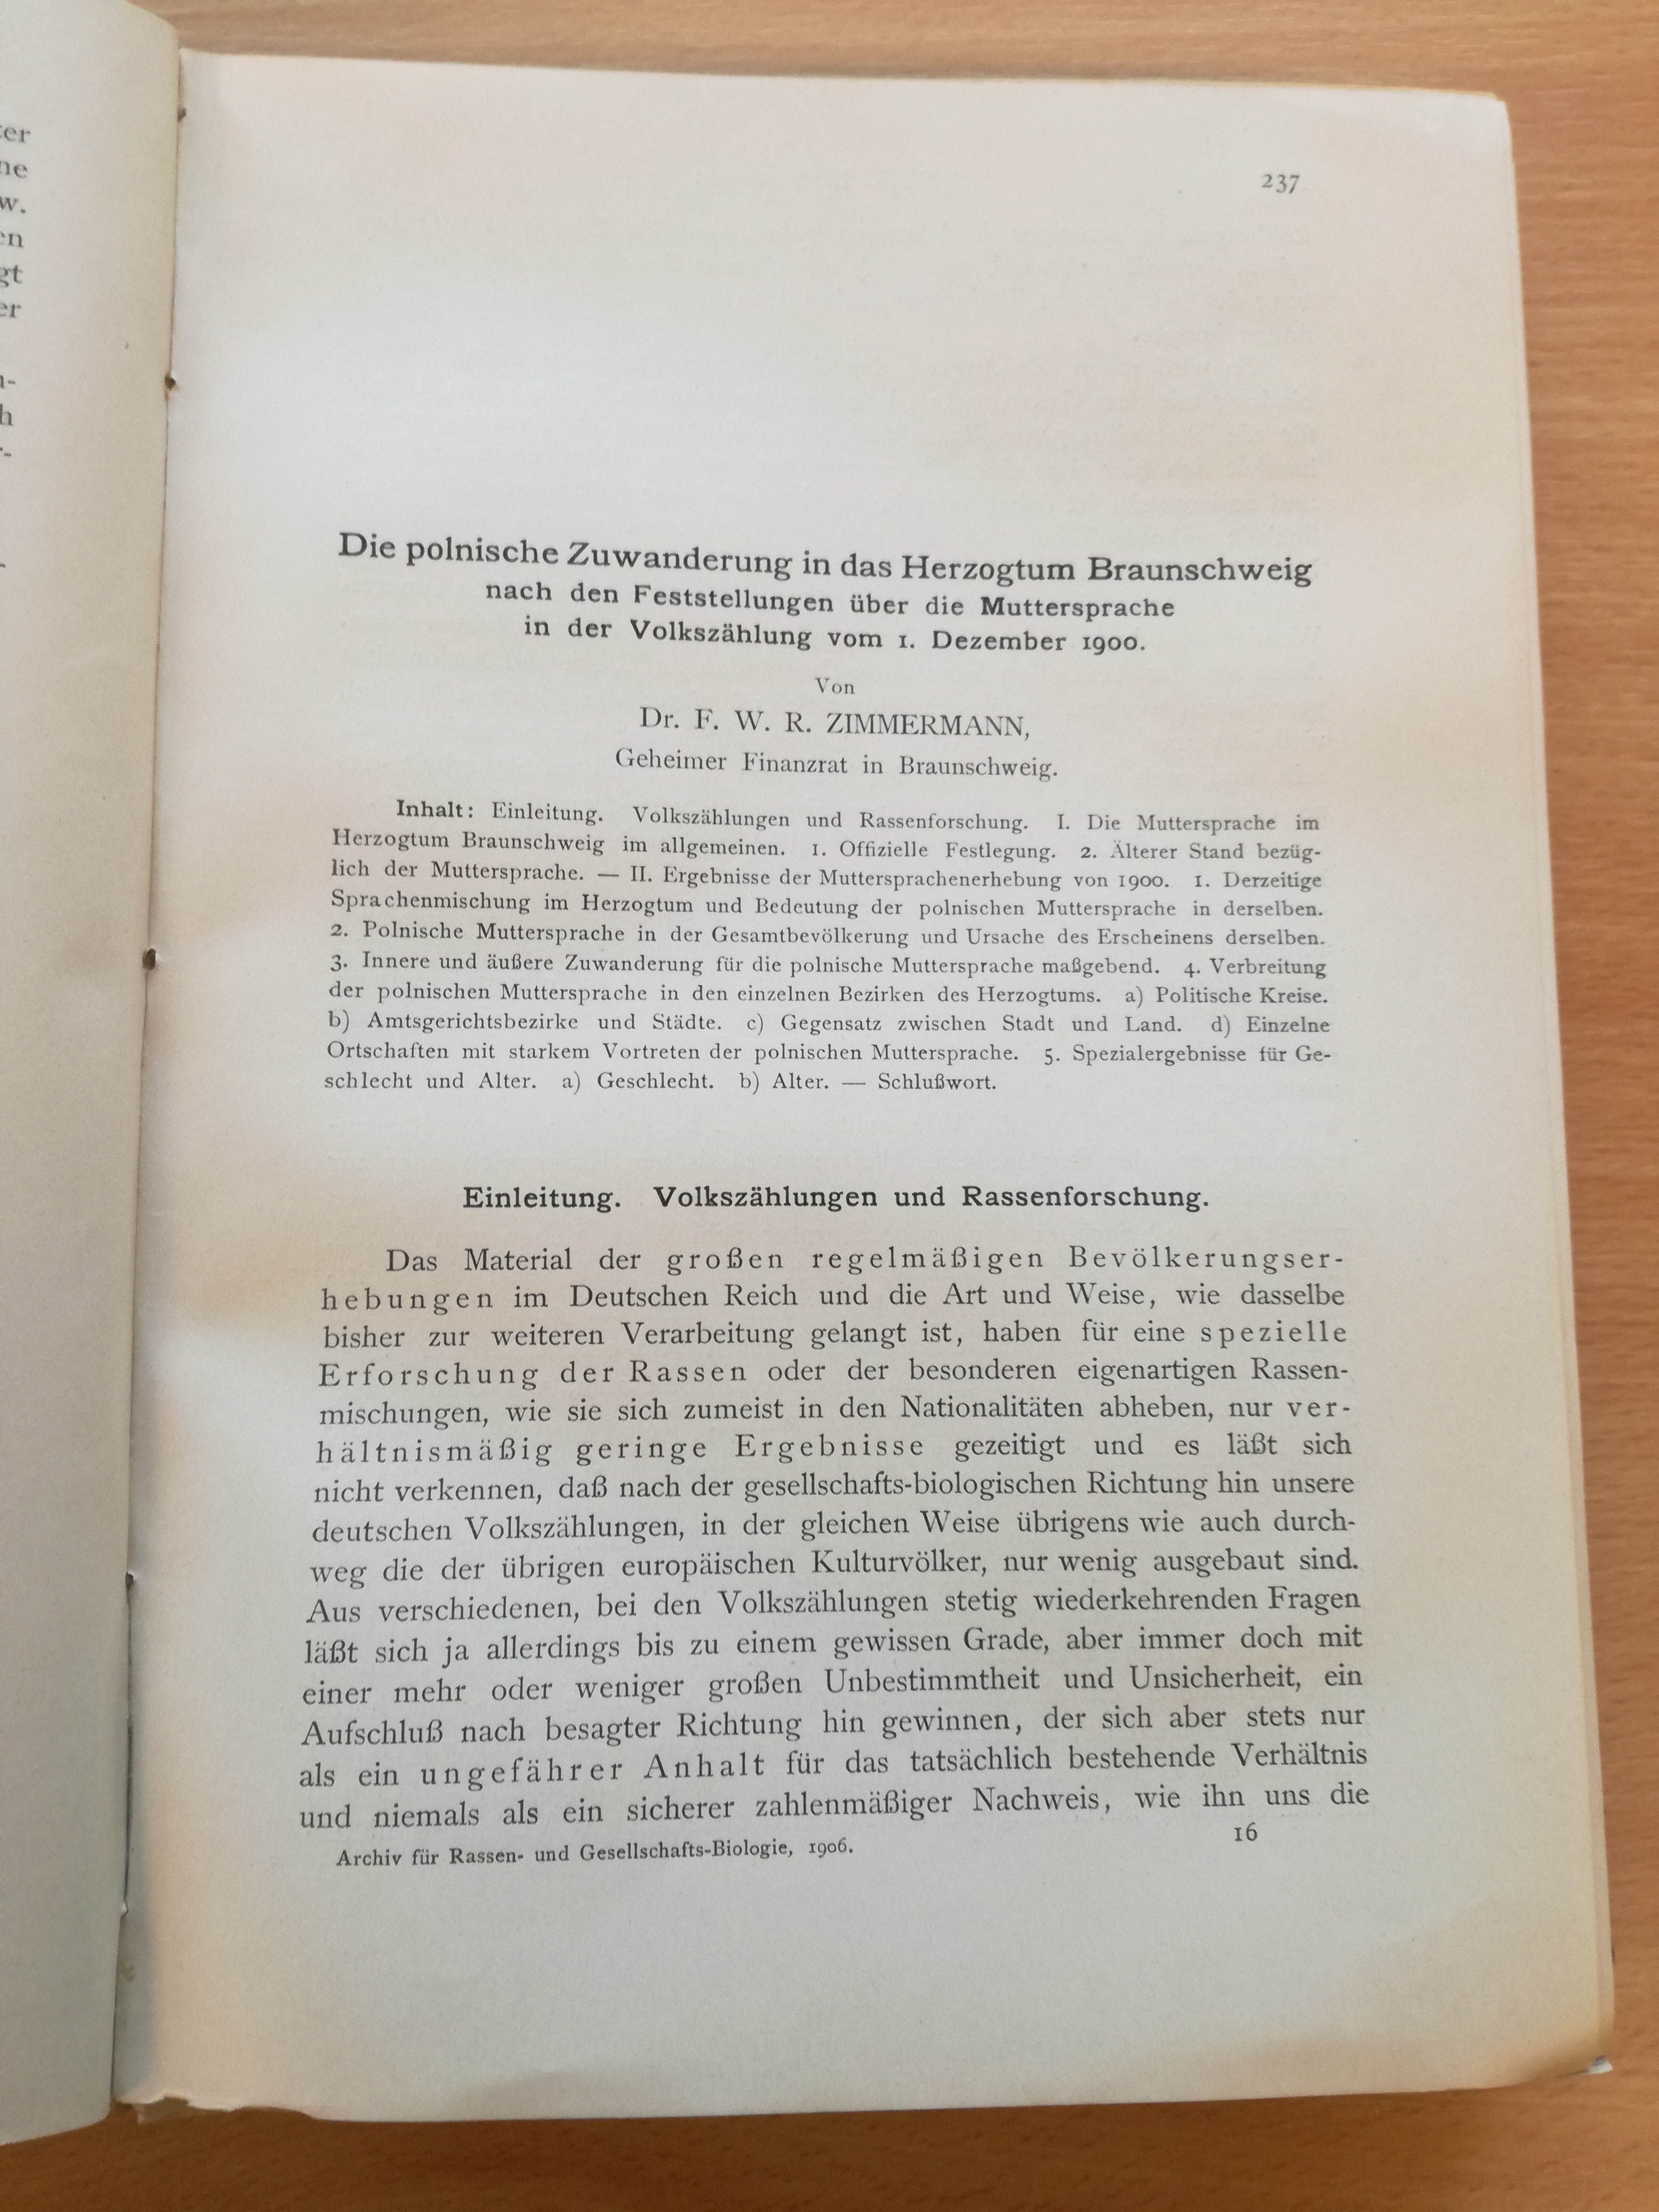 Zimmermann, Die polnische Zuwanderung in das Herzogtum Braunschweig, in Archiv für Rassen- und Gesellschafts-Biologie